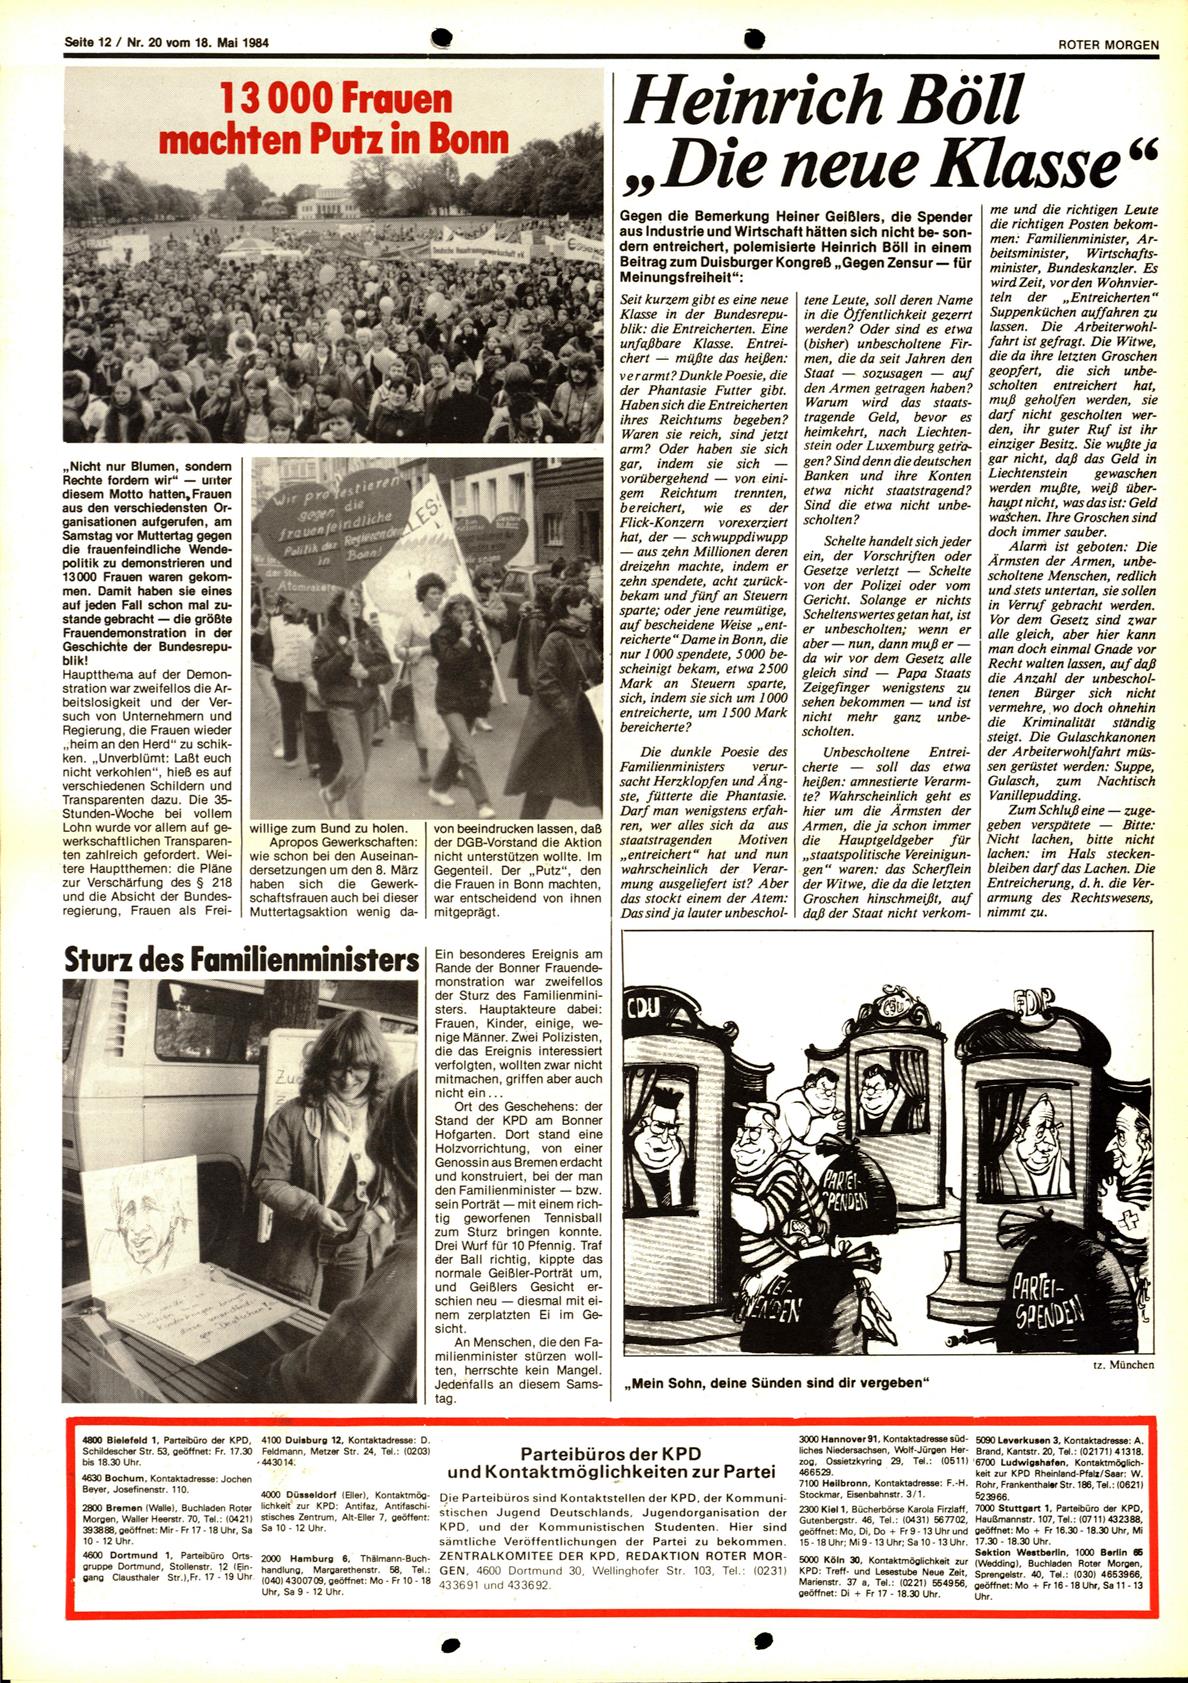 Roter Morgen, 18. Jg., 18. Mai 1984, Nr. 20, Seite 12